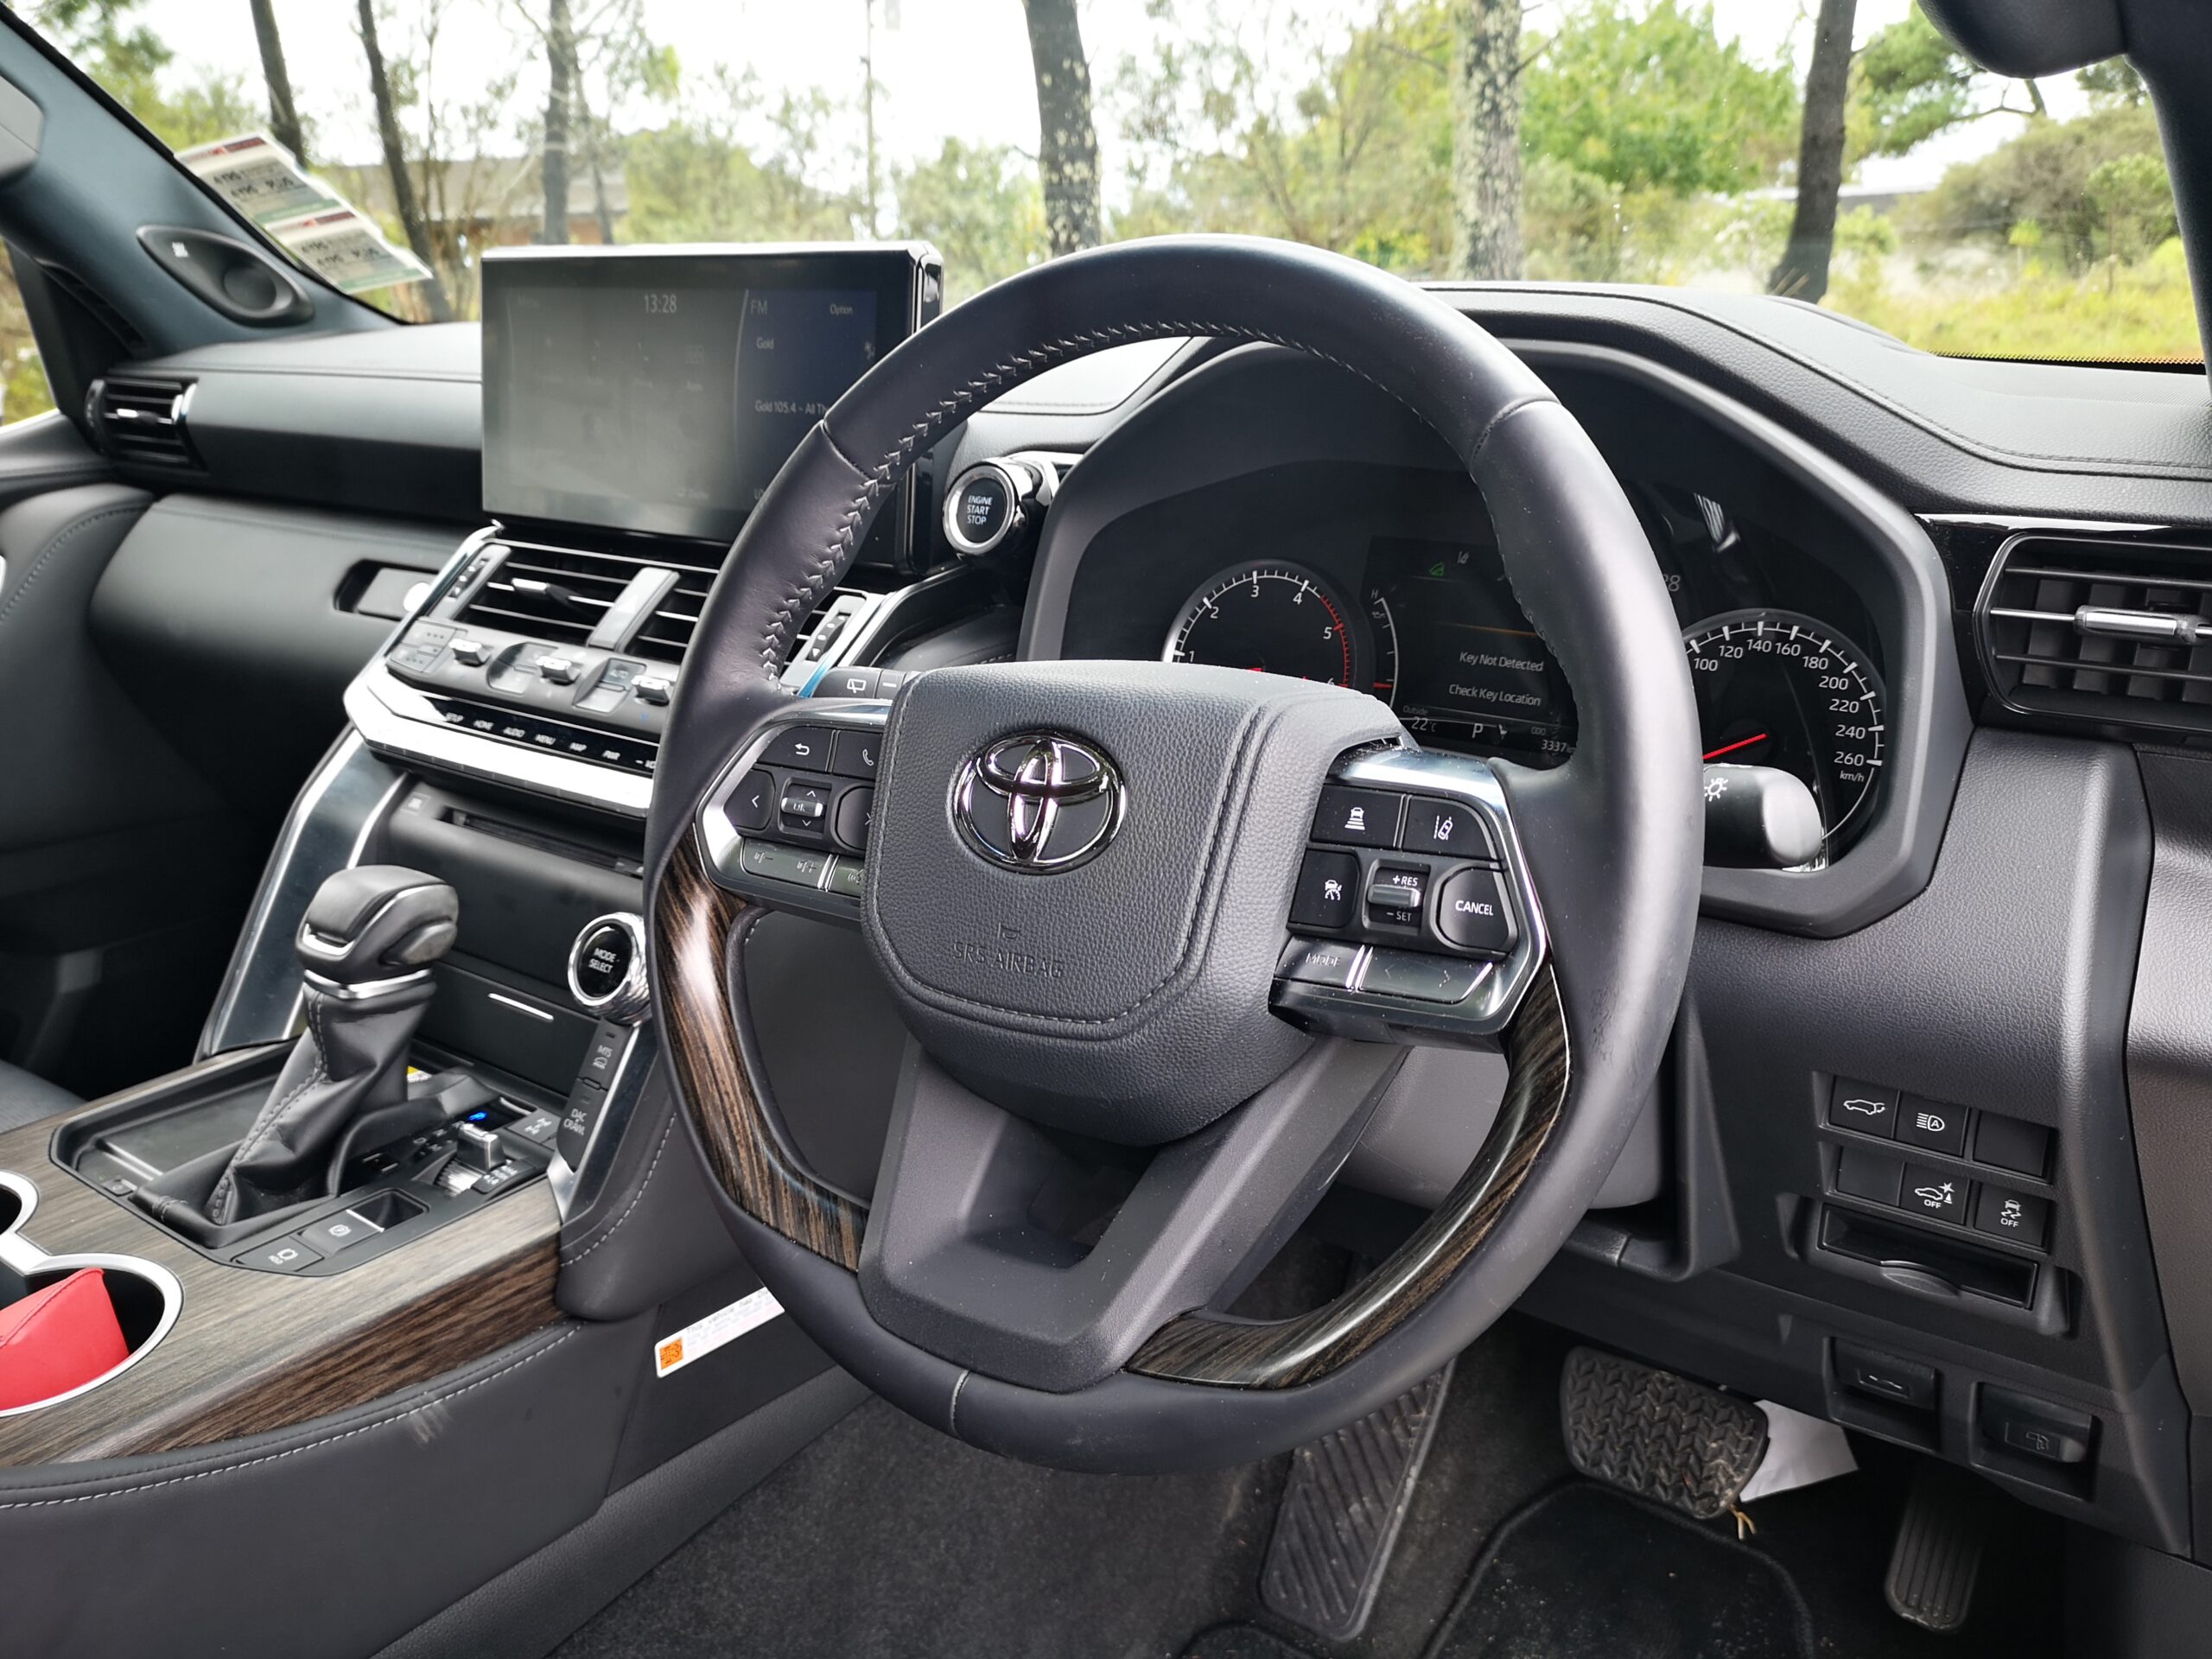 2022 Toyota Land Cruiser VX 300 Limited review NZ